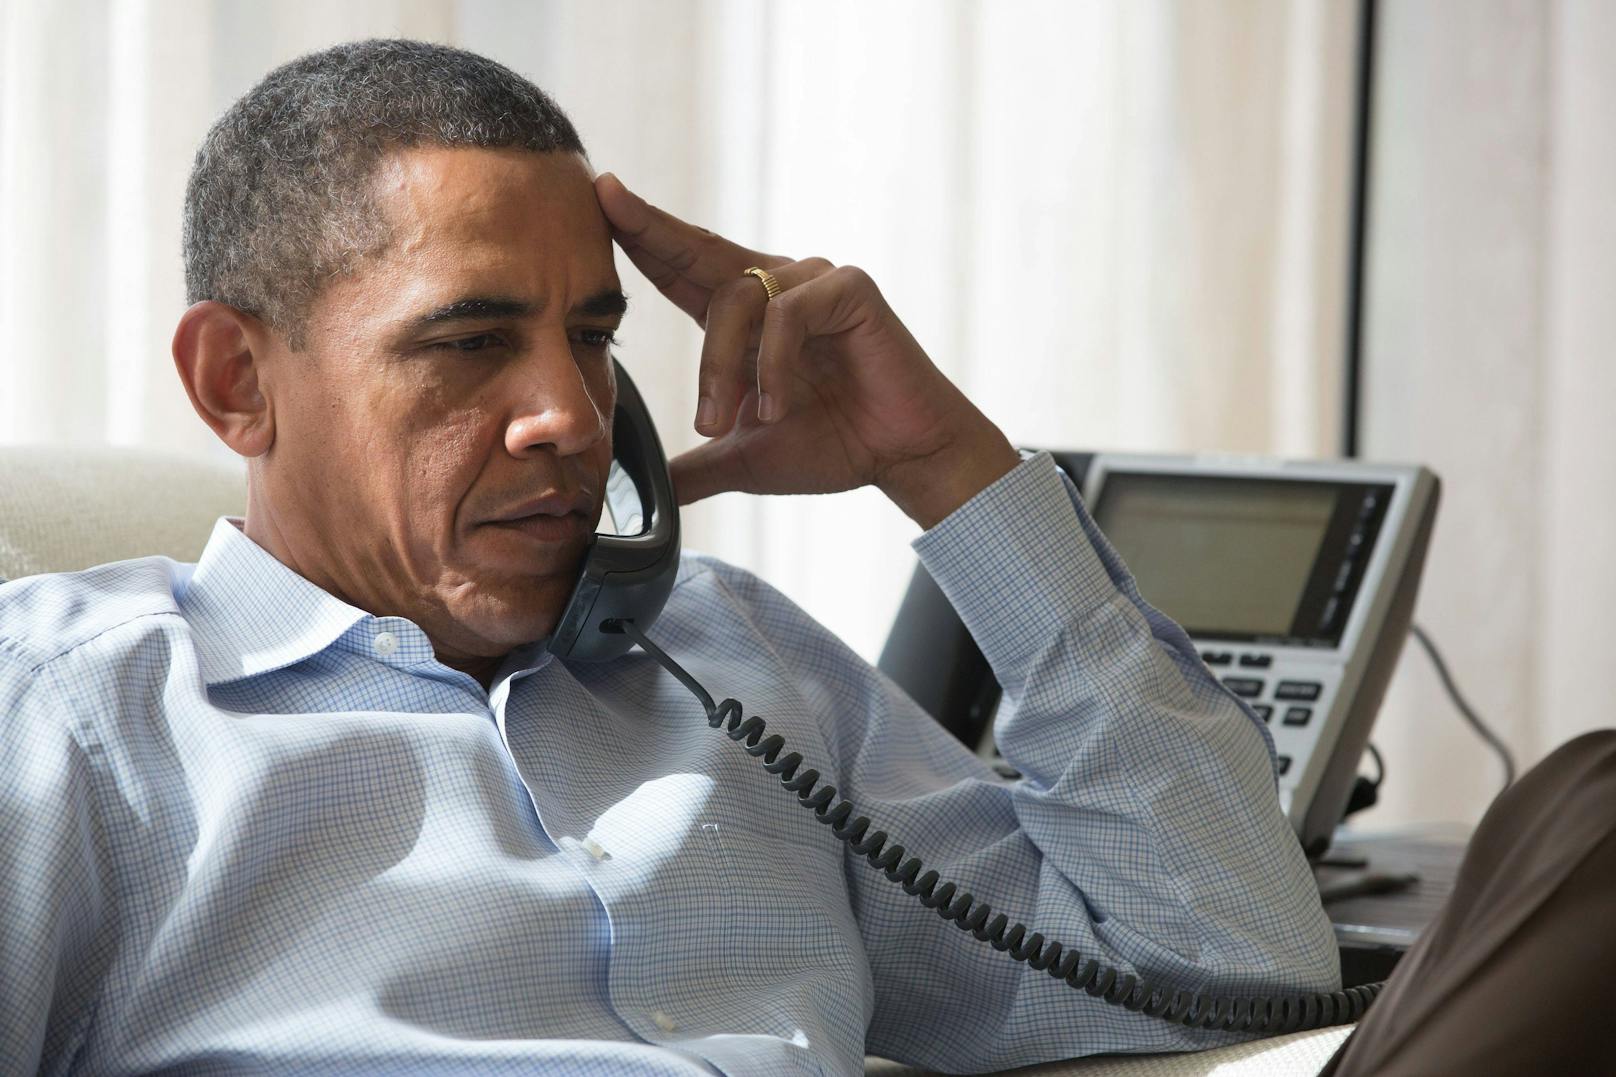 Der damalige US-Präsident Barack Obama während eines Telefonats in seinem Ferienhaus auf Martha's Vineyard 2013.